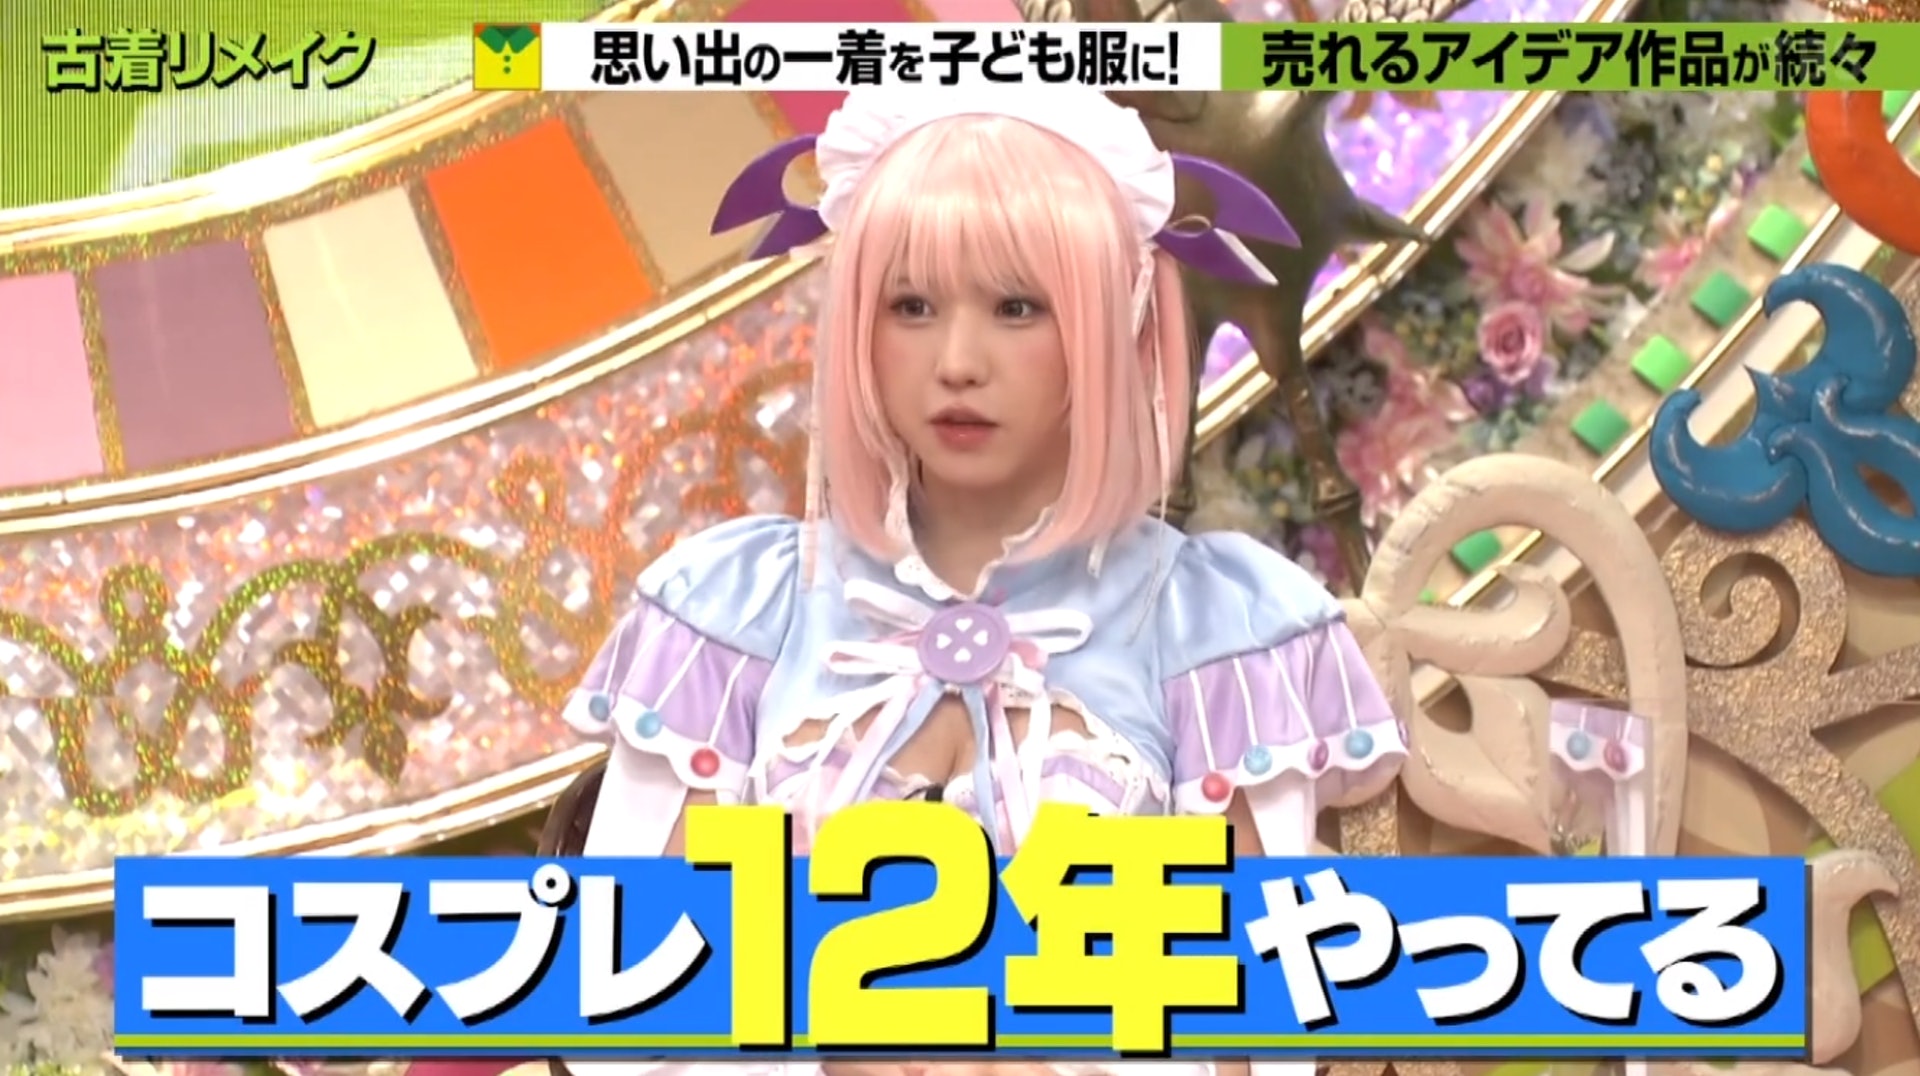 Enako在節目中以cosplay裝扮登場。